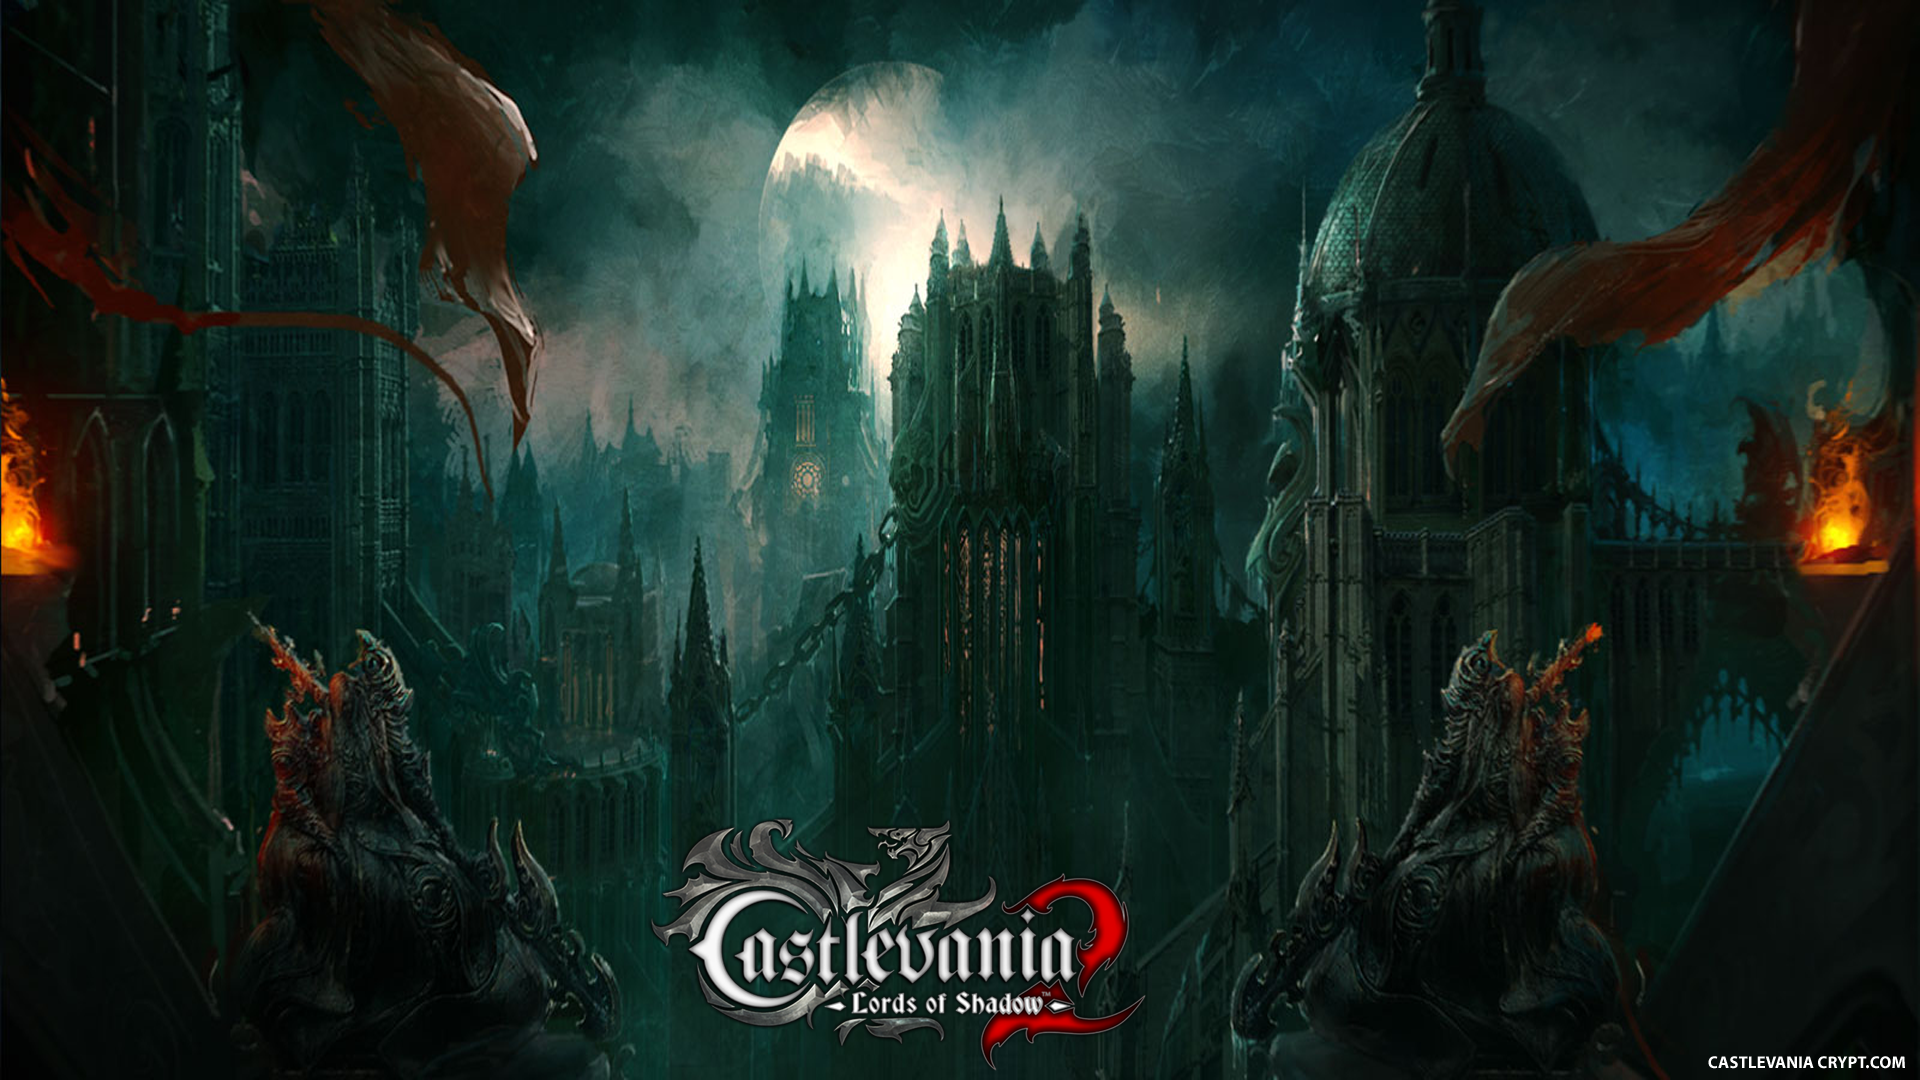 그림자 2의 castlevania 영주 바탕 화면,액션 어드벤처 게임,cg 삽화,어둠,영화,디지털 합성